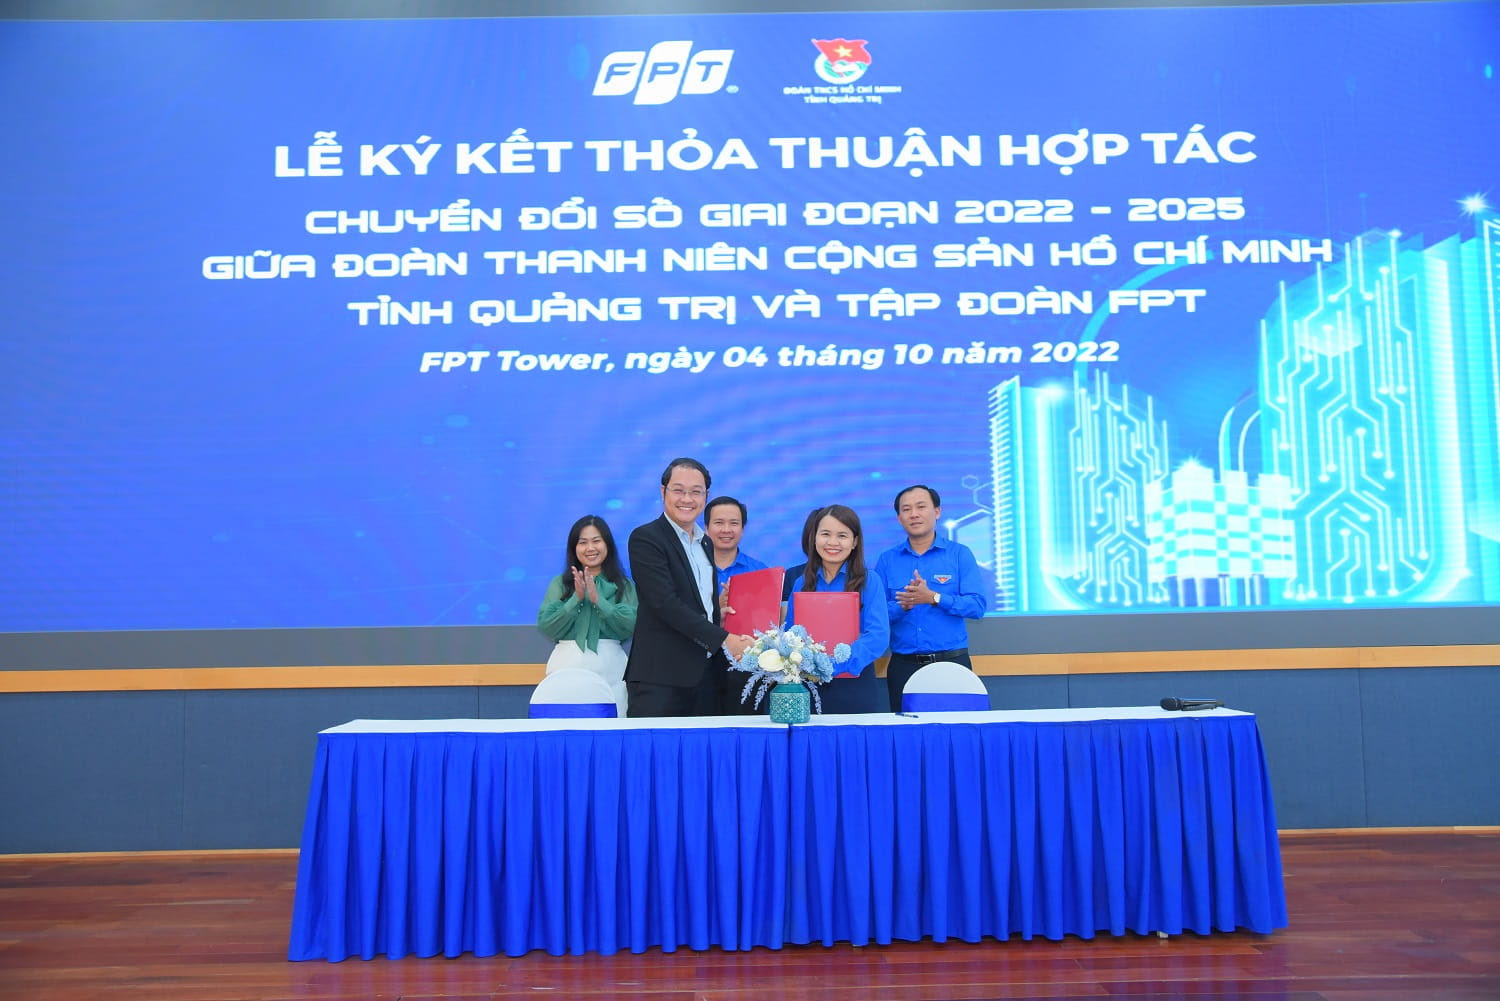 Ông Chu Quang Huy, Giám đốc nhân sự FPT và Đồng chí Trần Thị Thu Bí thư Tỉnh đoàn Quảng trị ký kết thỏa thuận hợp tác